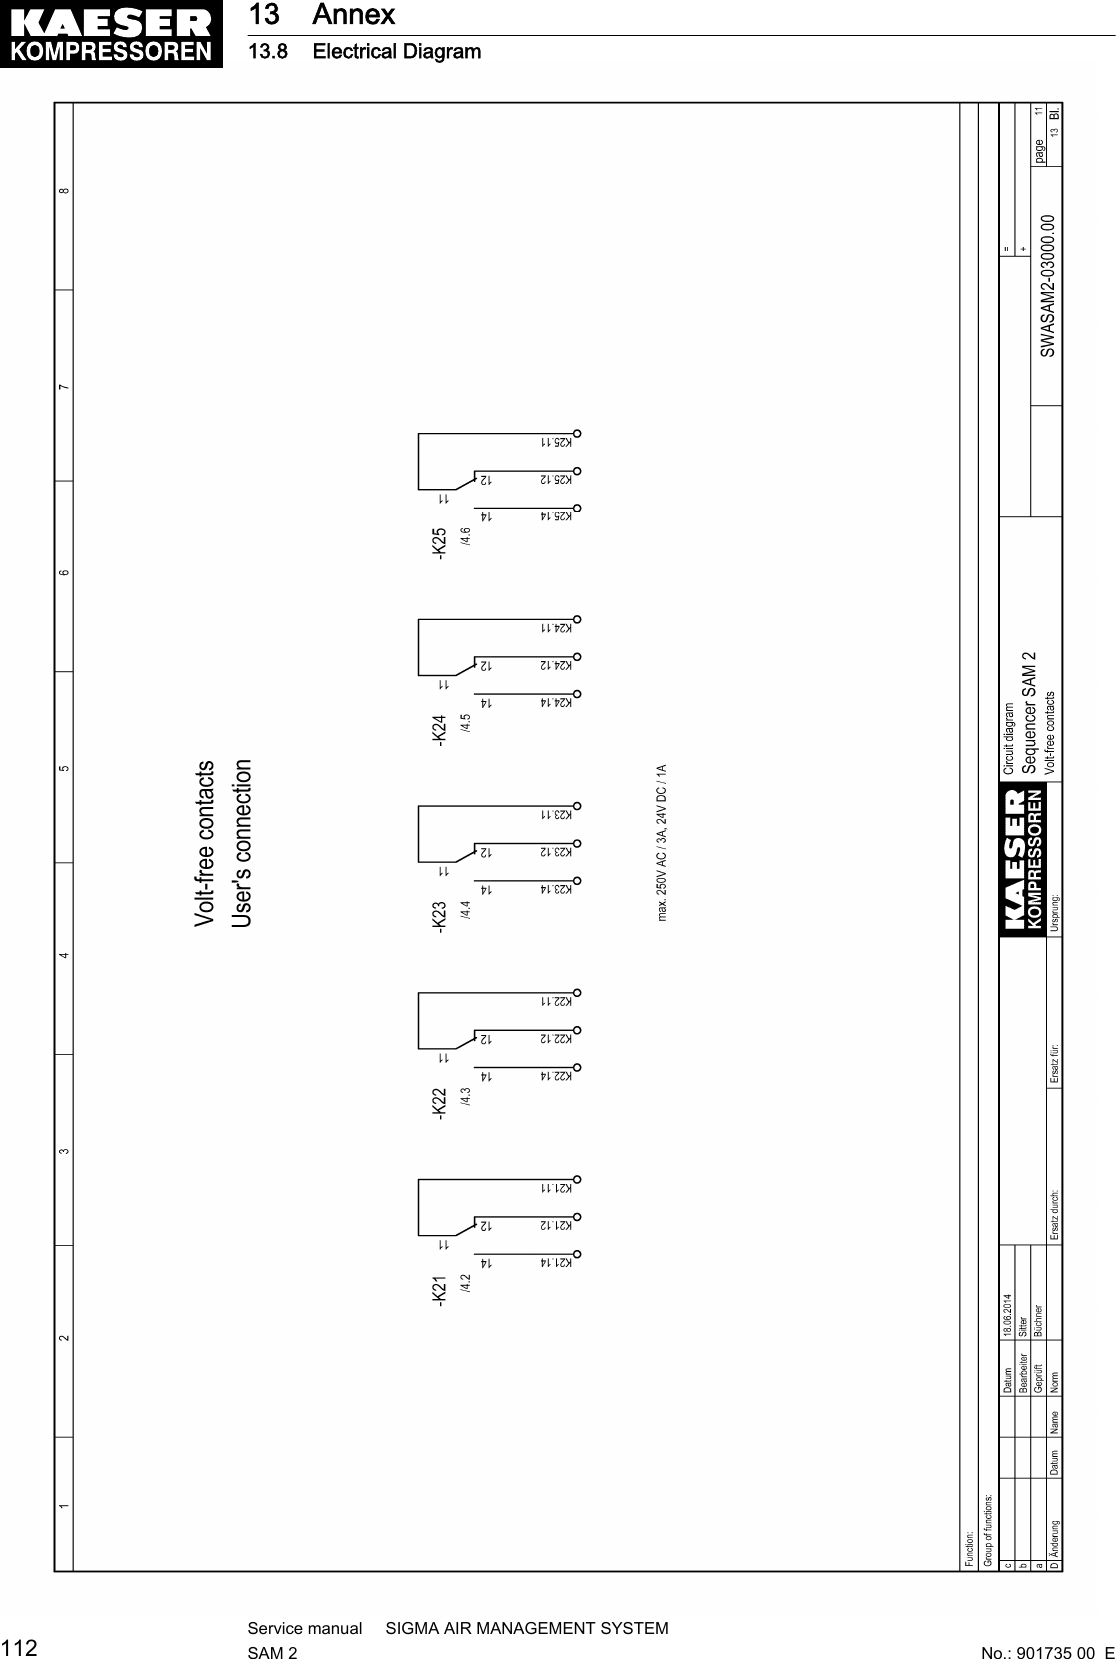 13 Annex13.8 Electrical Diagram112Service manual     SIGMA AIR MANAGEMENT SYSTEMSAM 2  No.: 901735 00  E